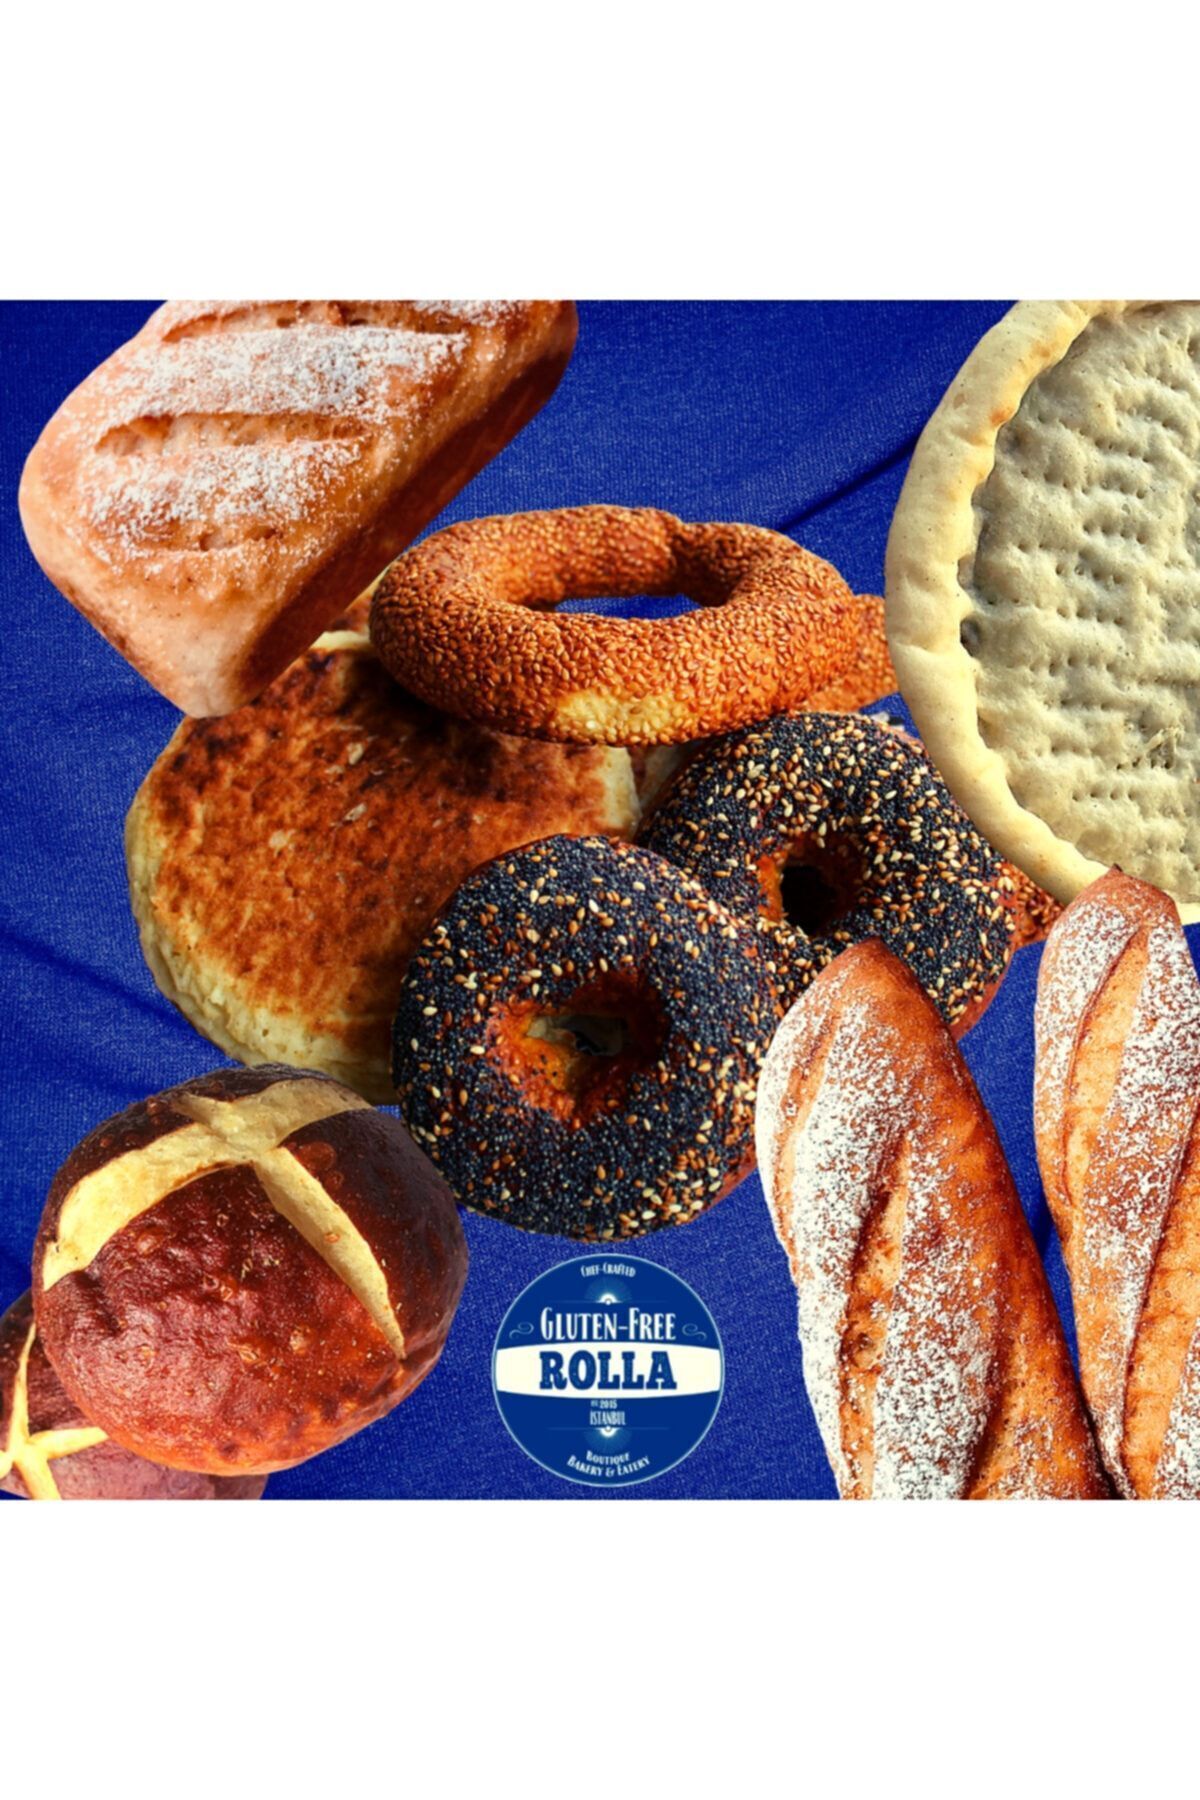 Rolla Gluten Free Rolla Gluten-free Glütensiz Maxi Tanışma Paketi